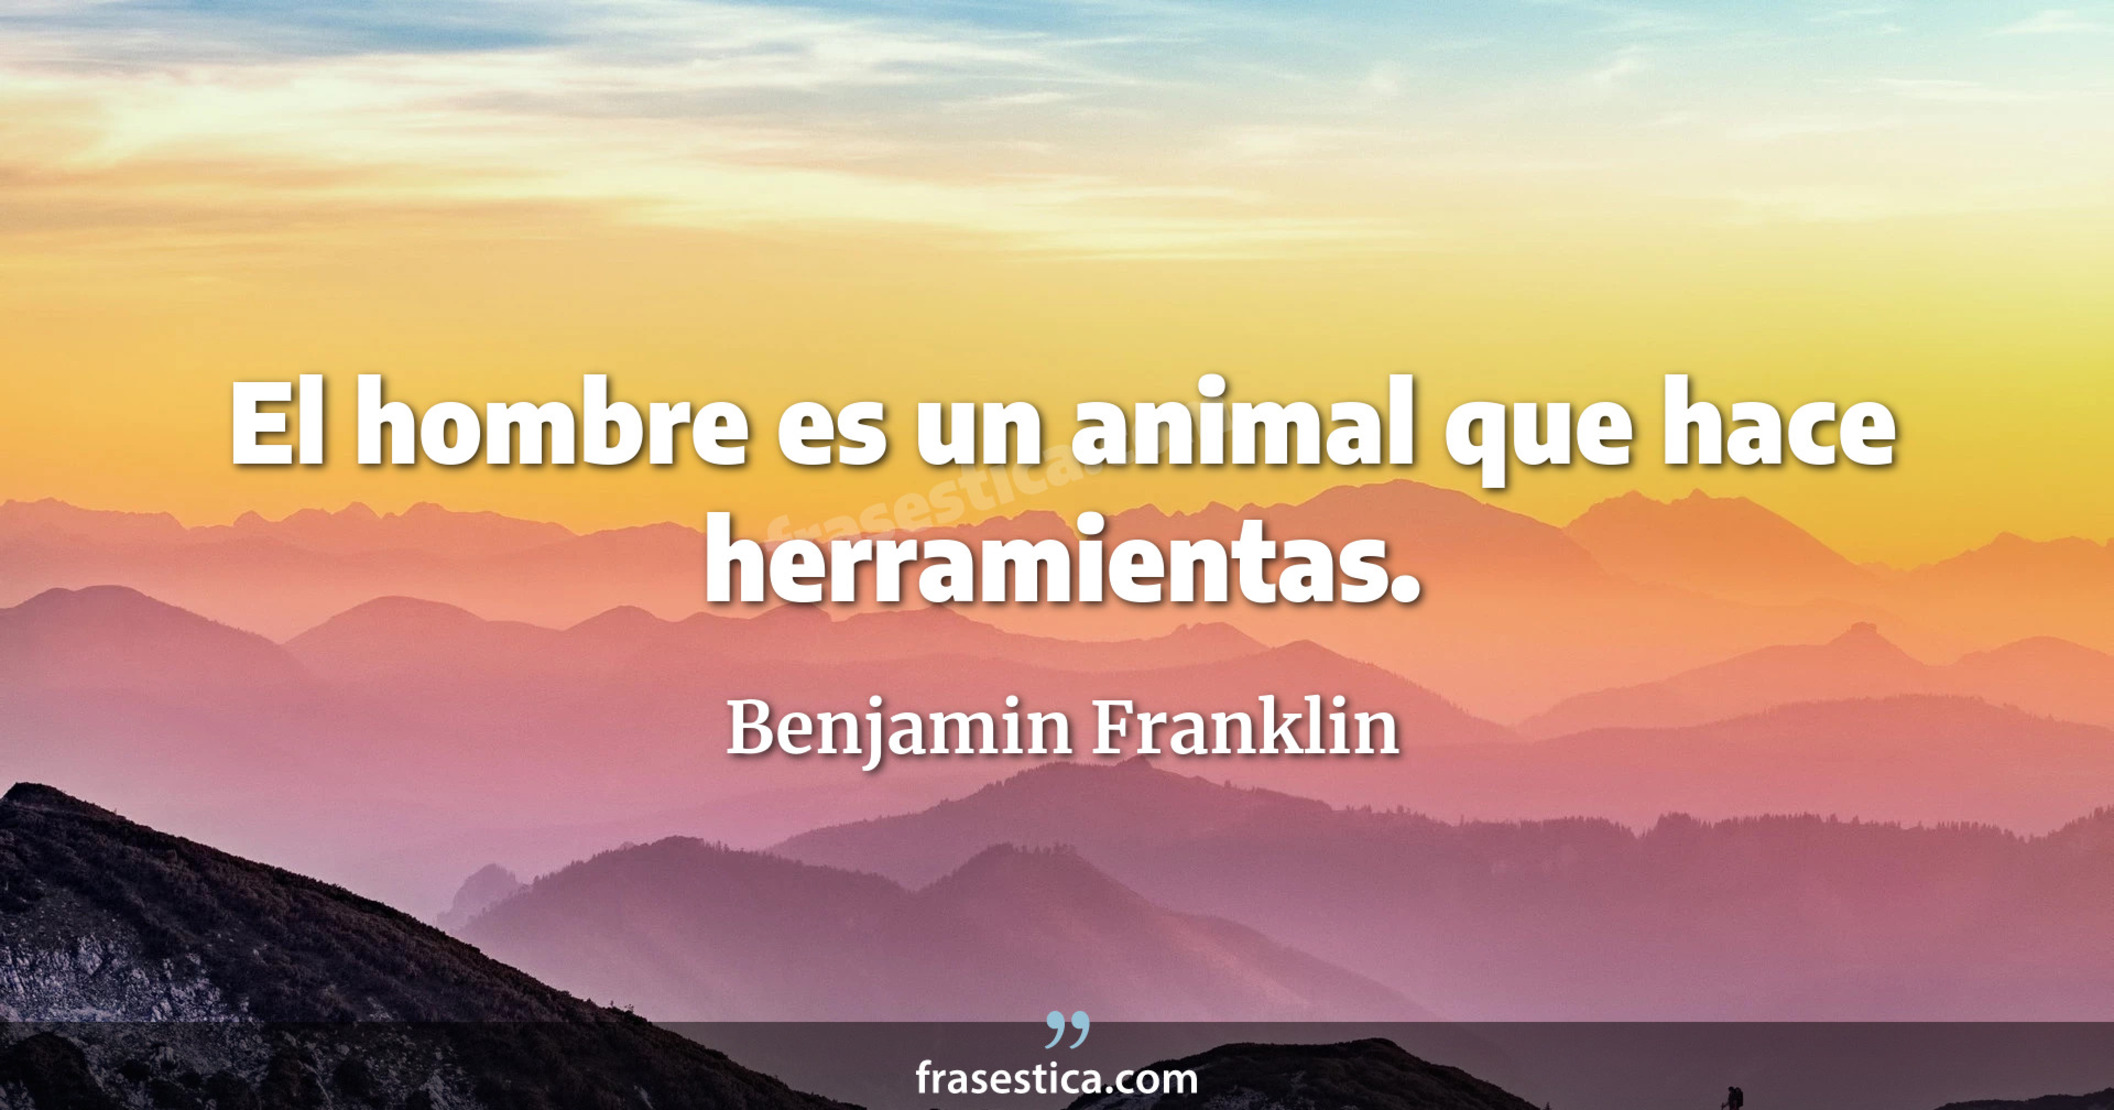 El hombre es un animal que hace herramientas. - Benjamin Franklin